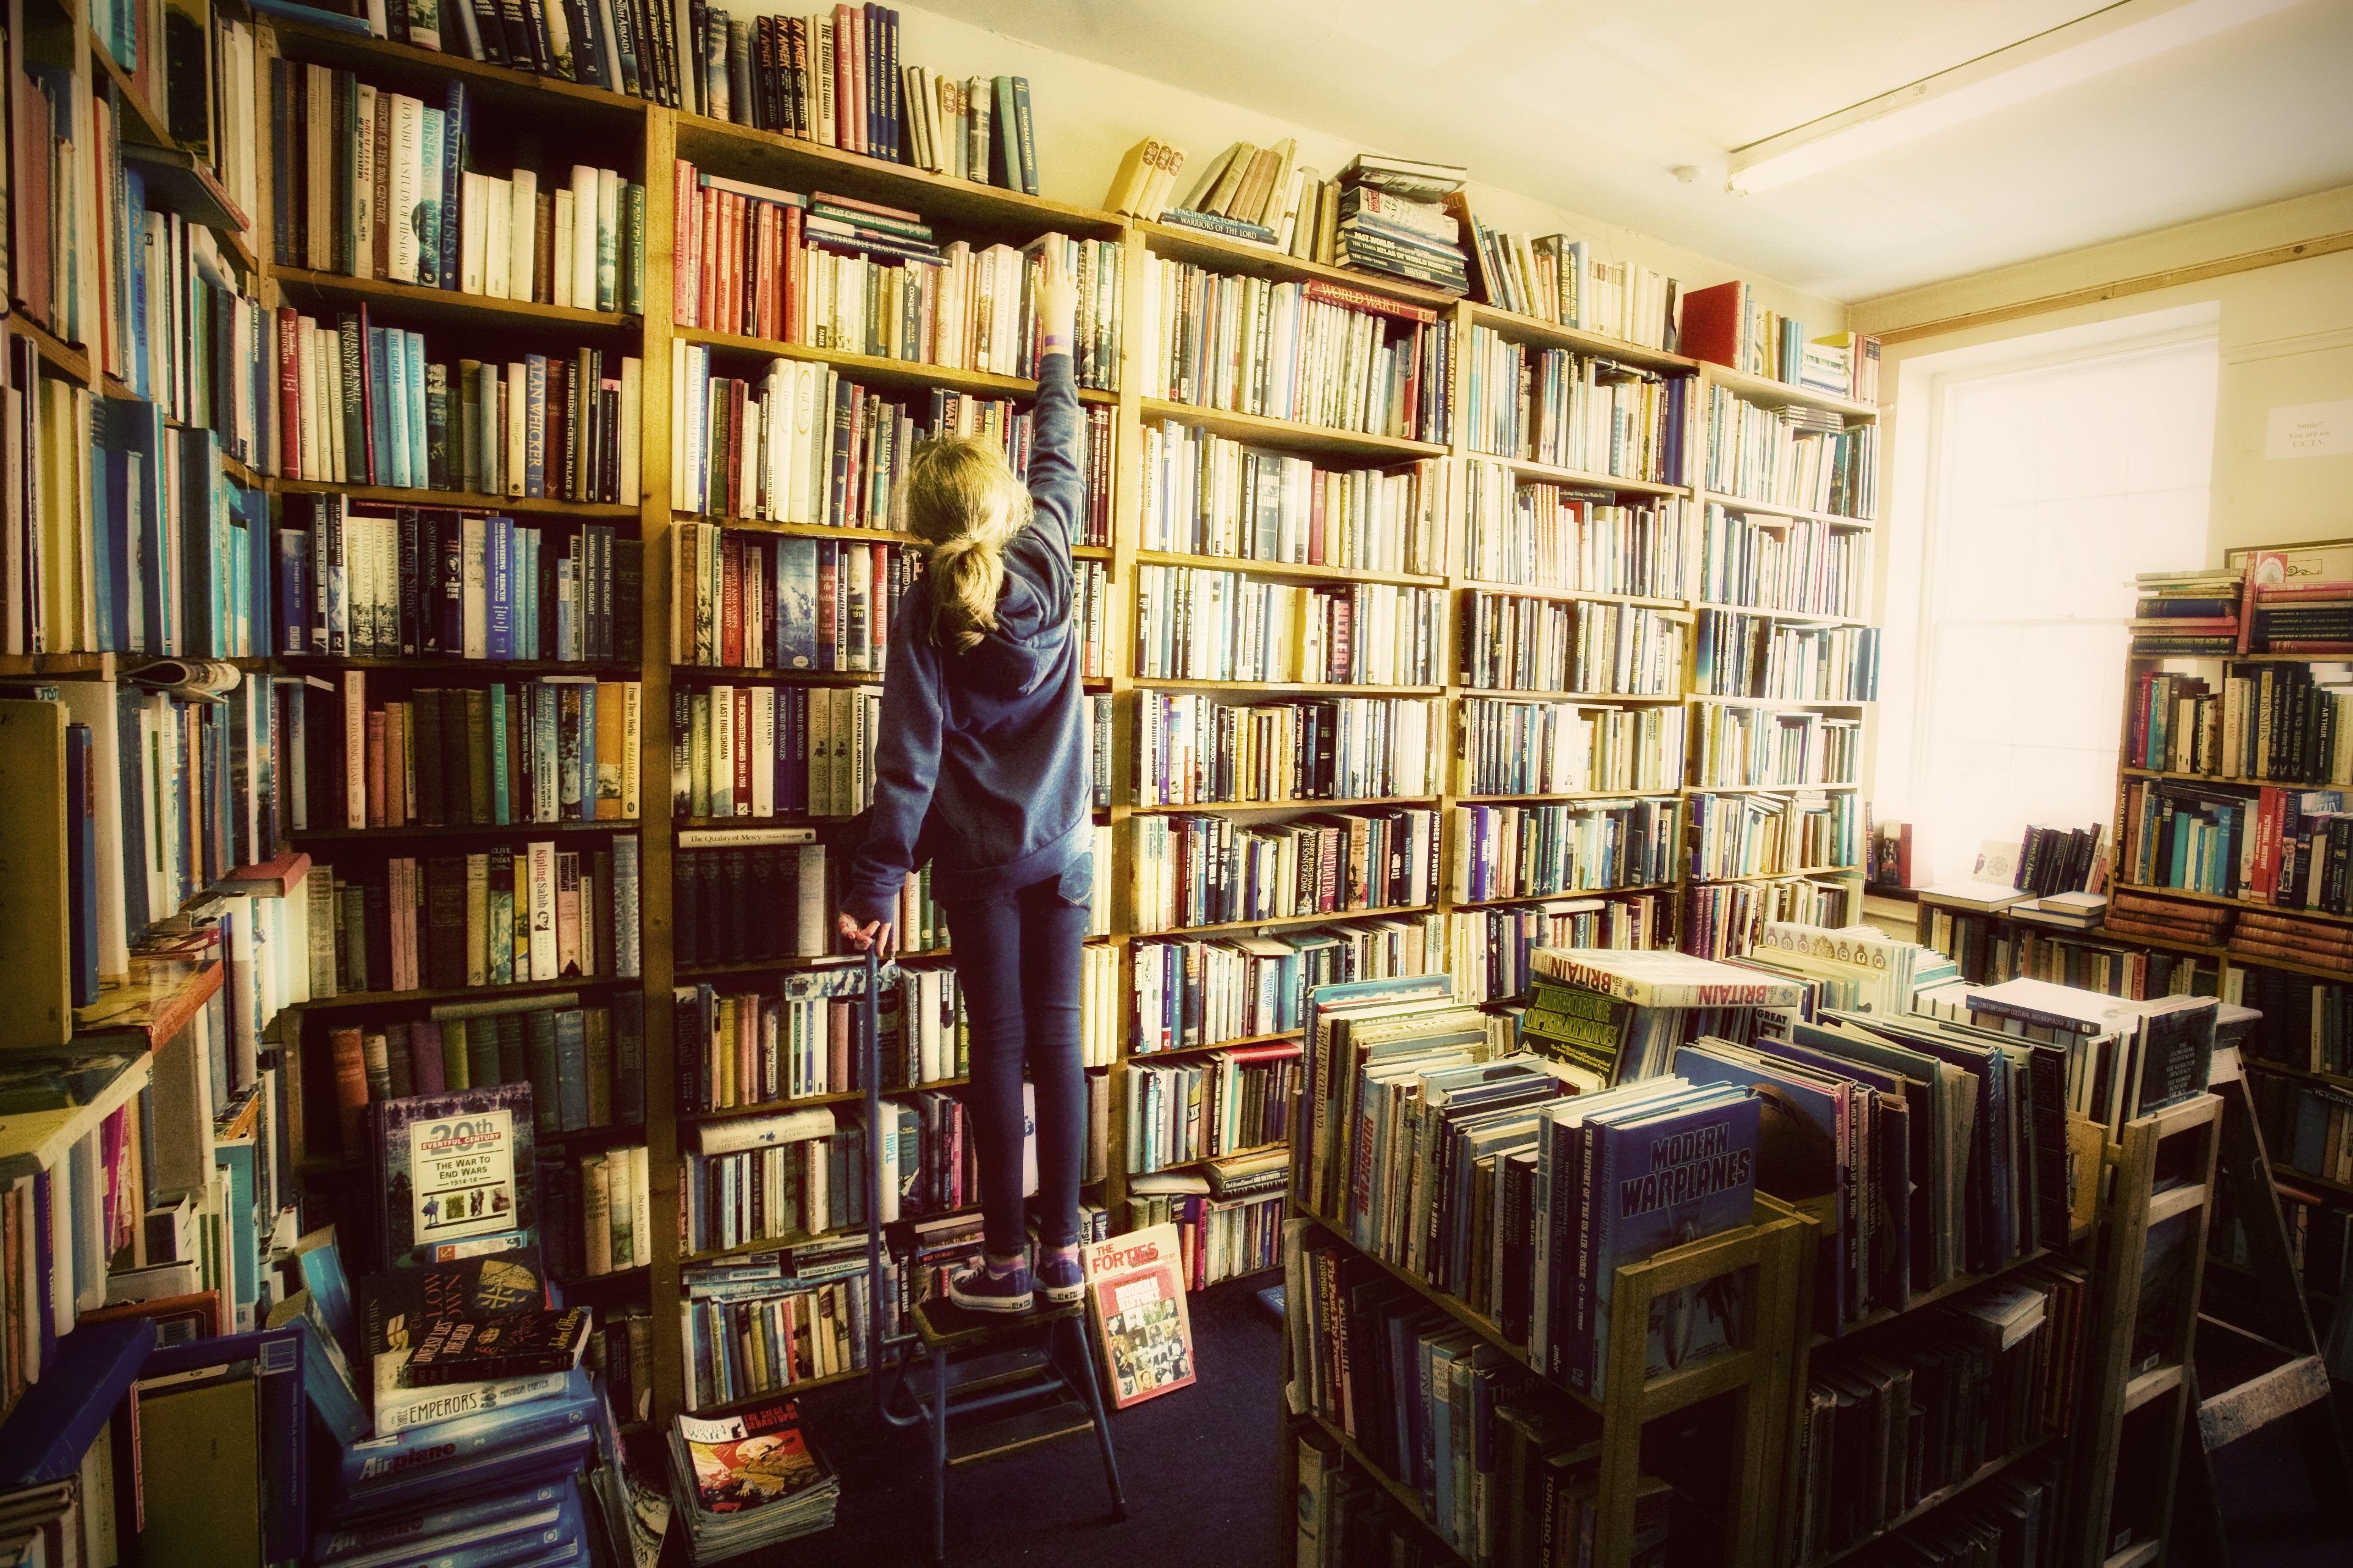 Слушать библиотеке книги. Фотография библиотеки. Фотосессия в библиотеке. Хобби чтение книг. Человек в домашней библиотеке.